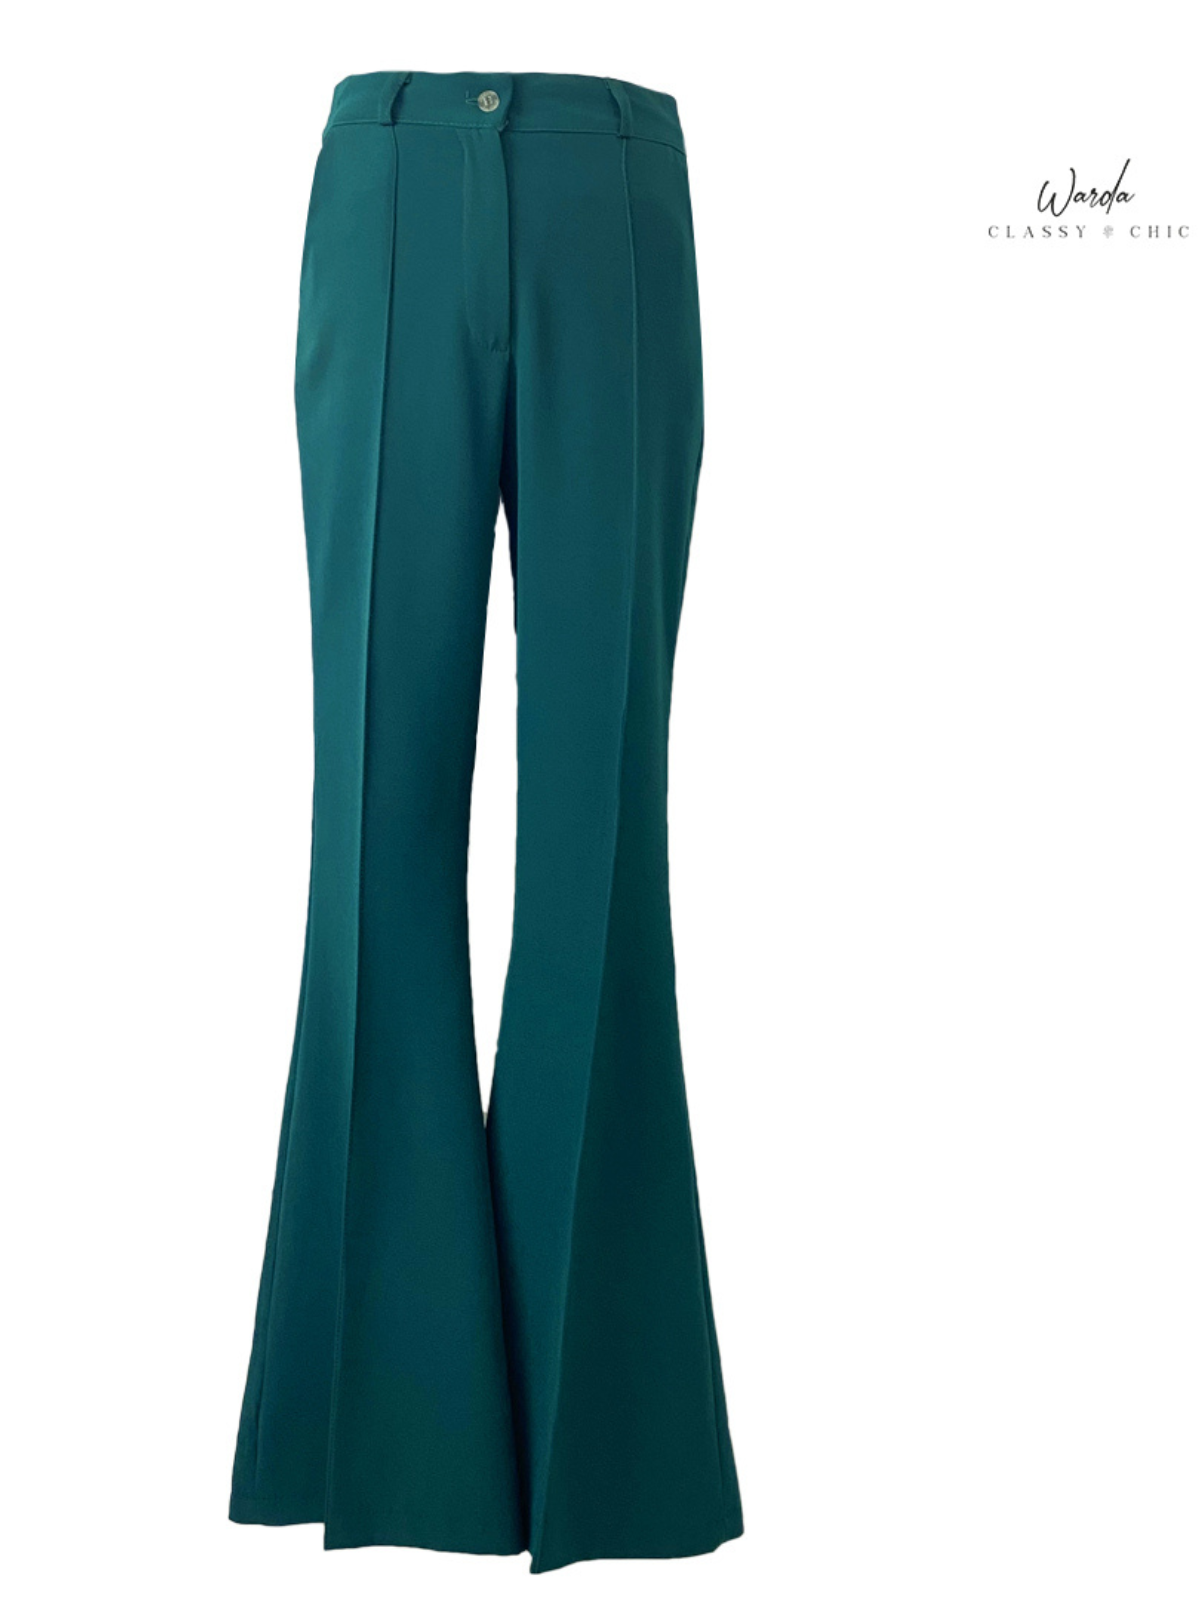 pantalon femme Flare vert Émeraude